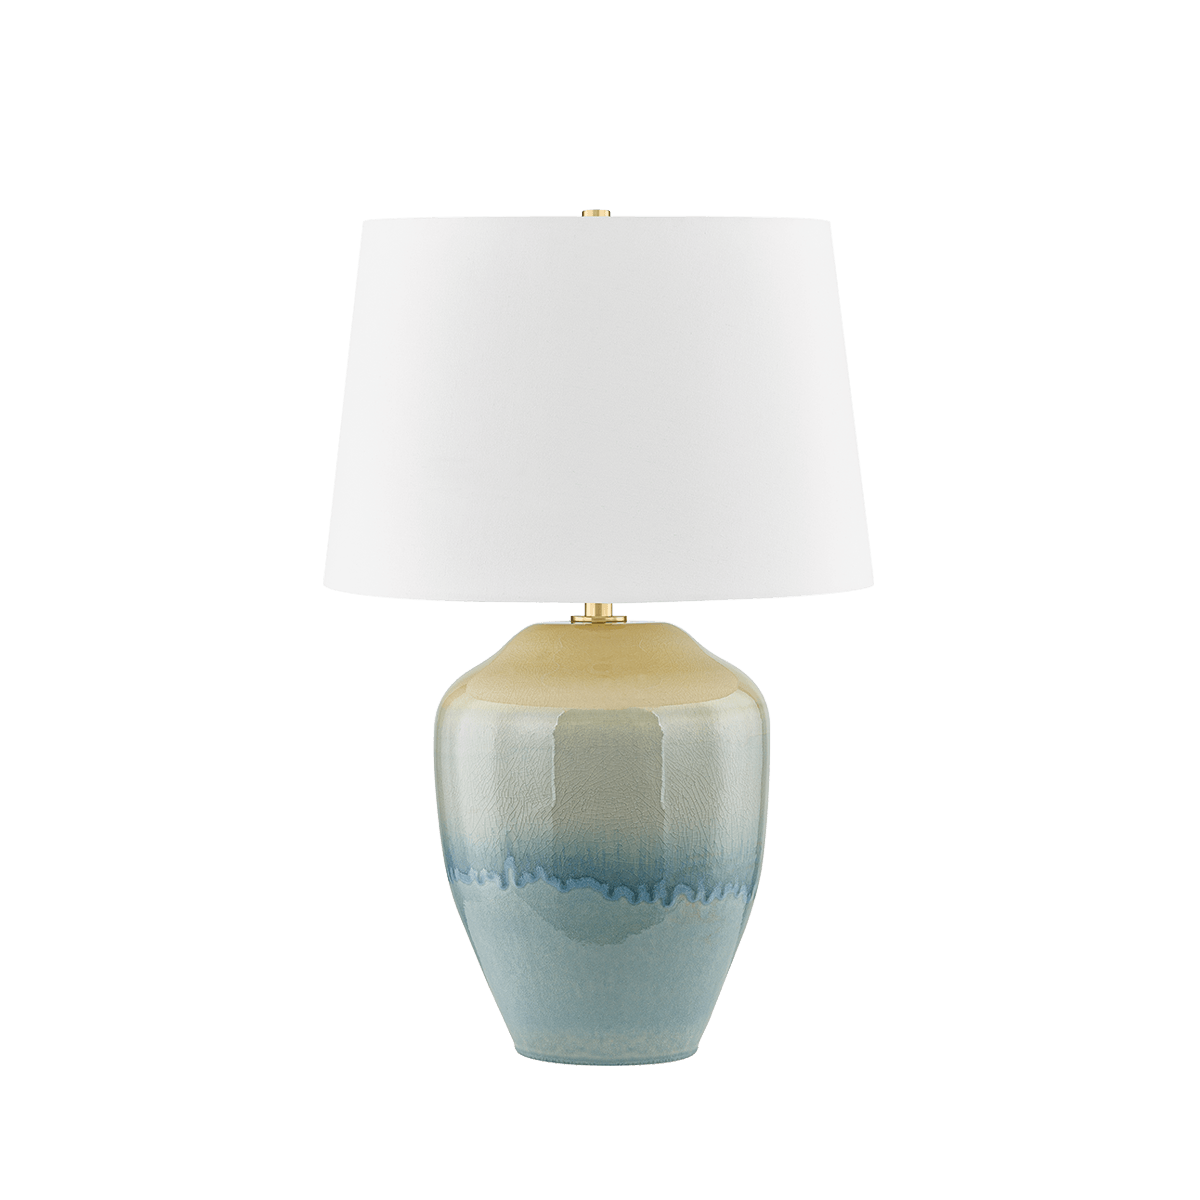 Hudson Valley Lighting - Montville Table Lamp - L6329-AGB/C05 | Montreal Lighting & Hardware